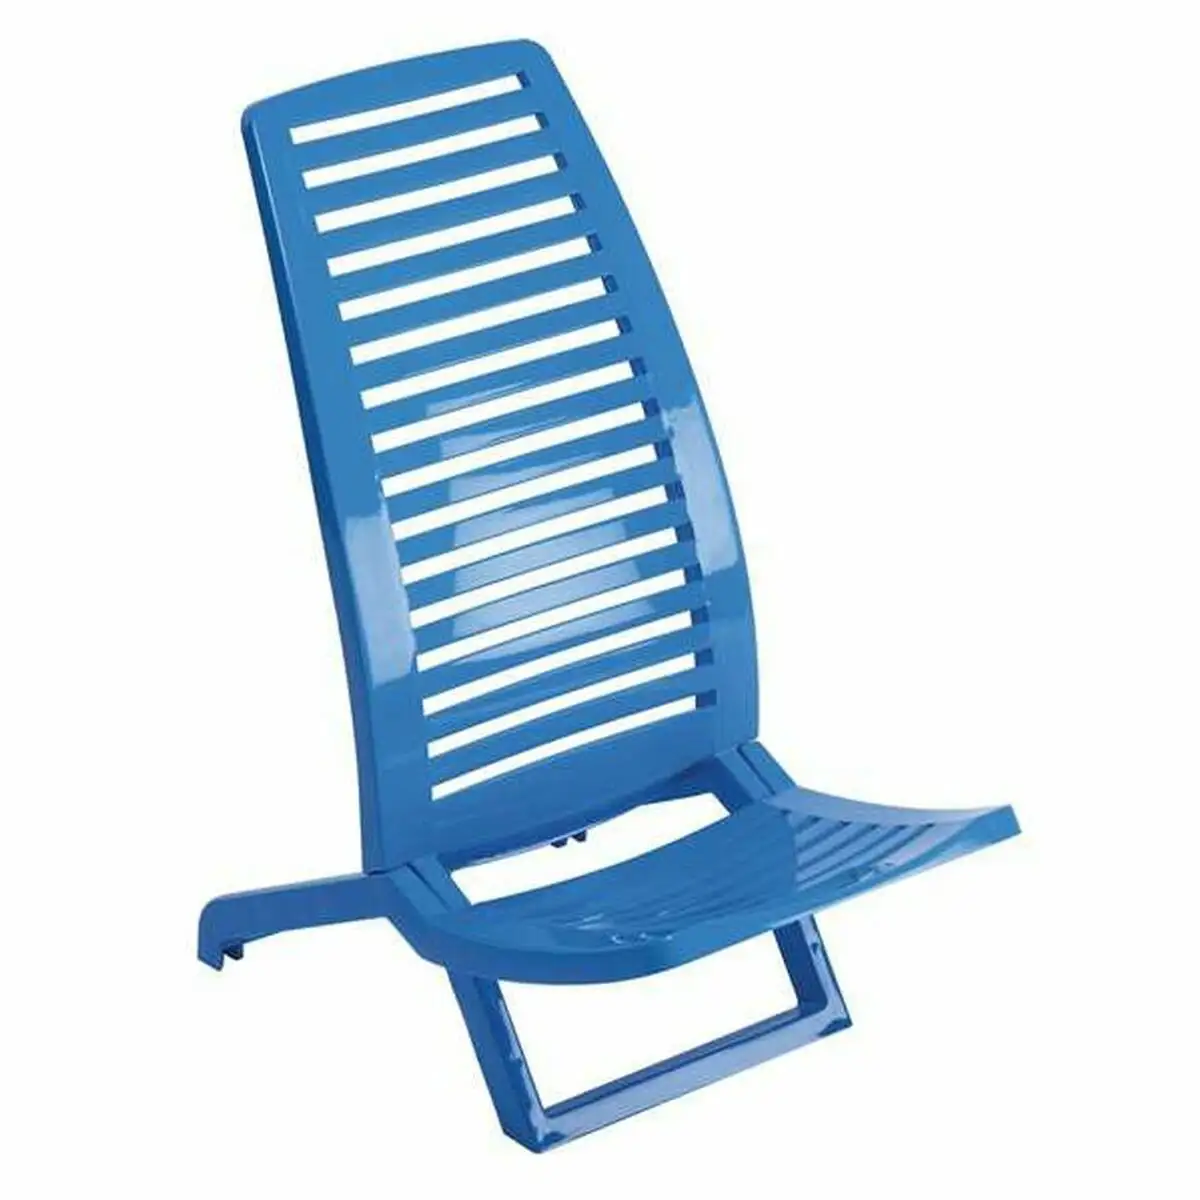 Chaise de plage alco bleu 38 x 60 x 72 cm 38 x 60 x 72 cm _7202. DIAYTAR SENEGAL - Où Choisir Rime avec Qualité. Découvrez notre sélection soigneusement conçue et choisissez des articles qui incarnent l'excellence et l'innovation.